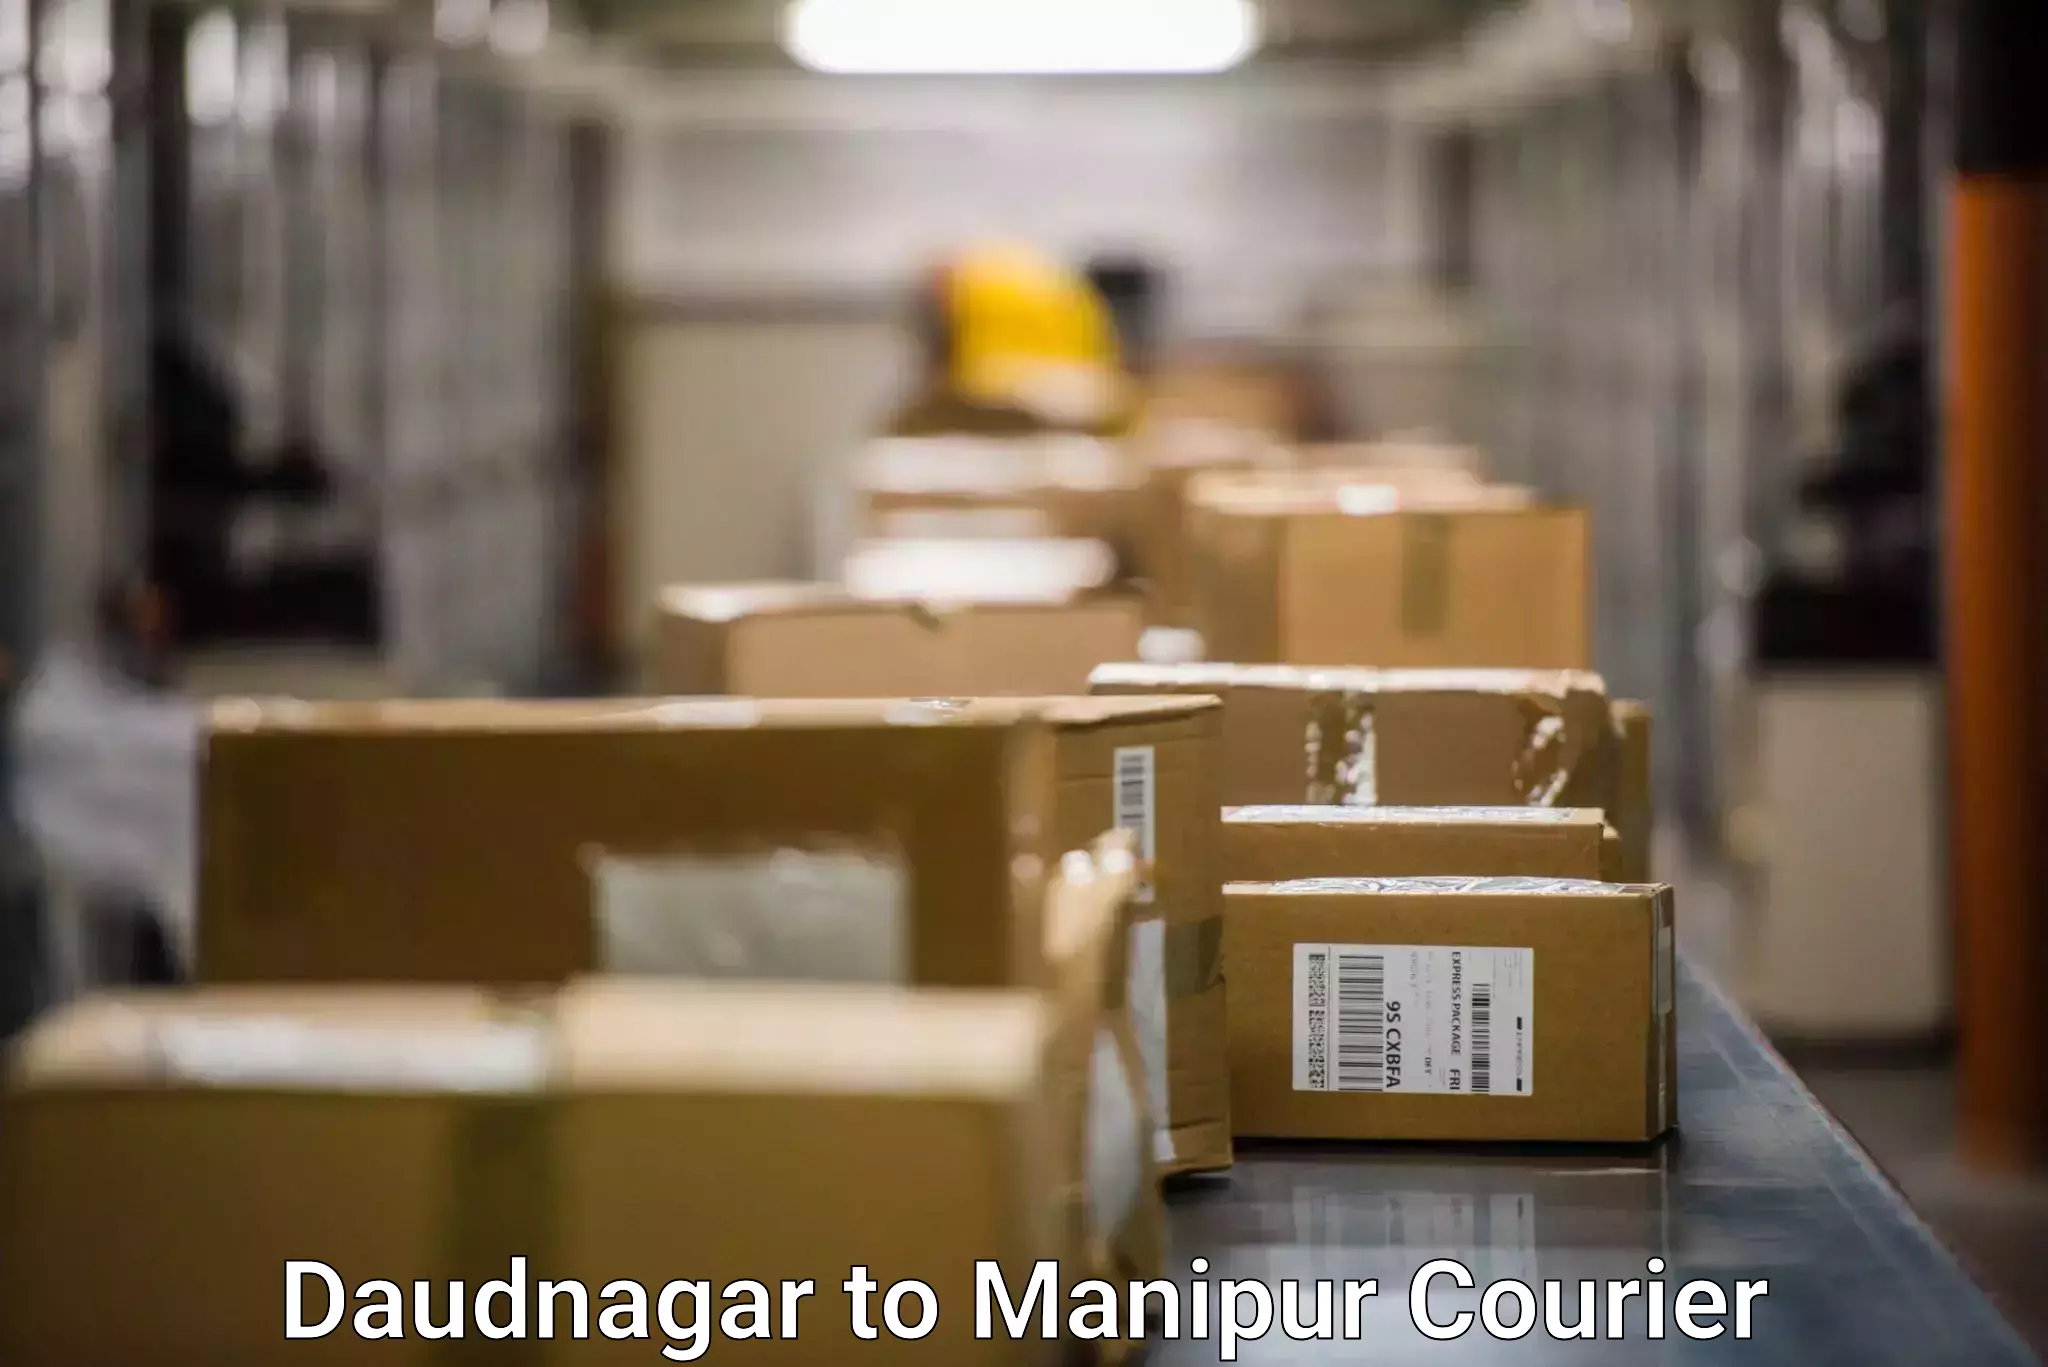 Multi-carrier shipping Daudnagar to Churachandpur